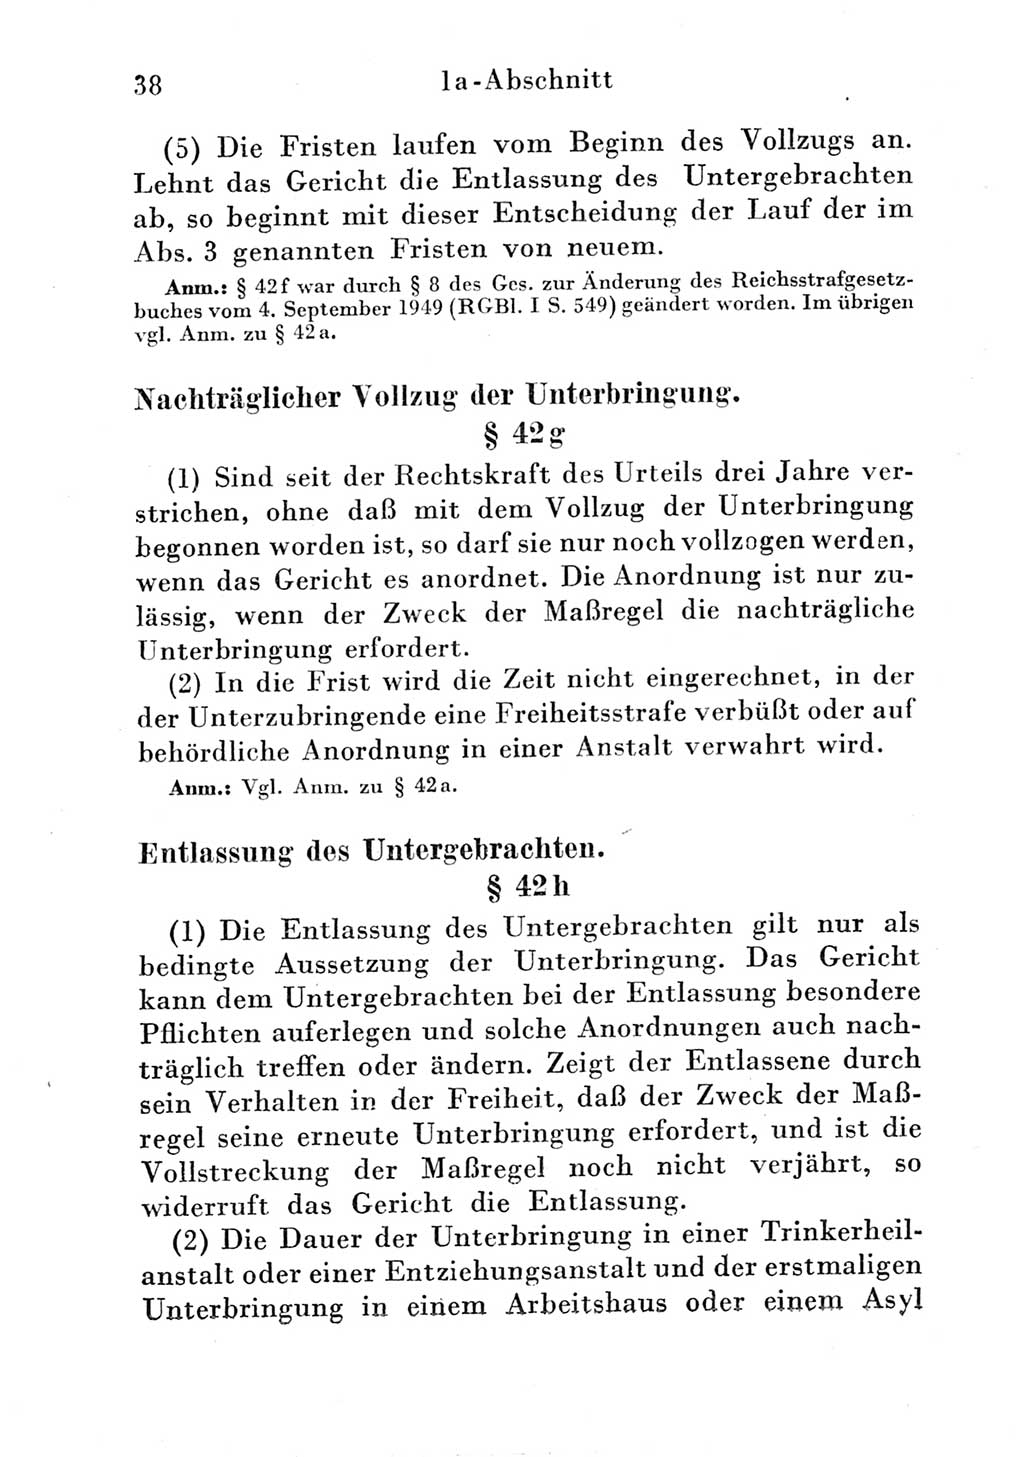 Strafgesetzbuch (StGB) und andere Strafgesetze [Deutsche Demokratische Republik (DDR)] 1951, Seite 38 (StGB Strafges. DDR 1951, S. 38)